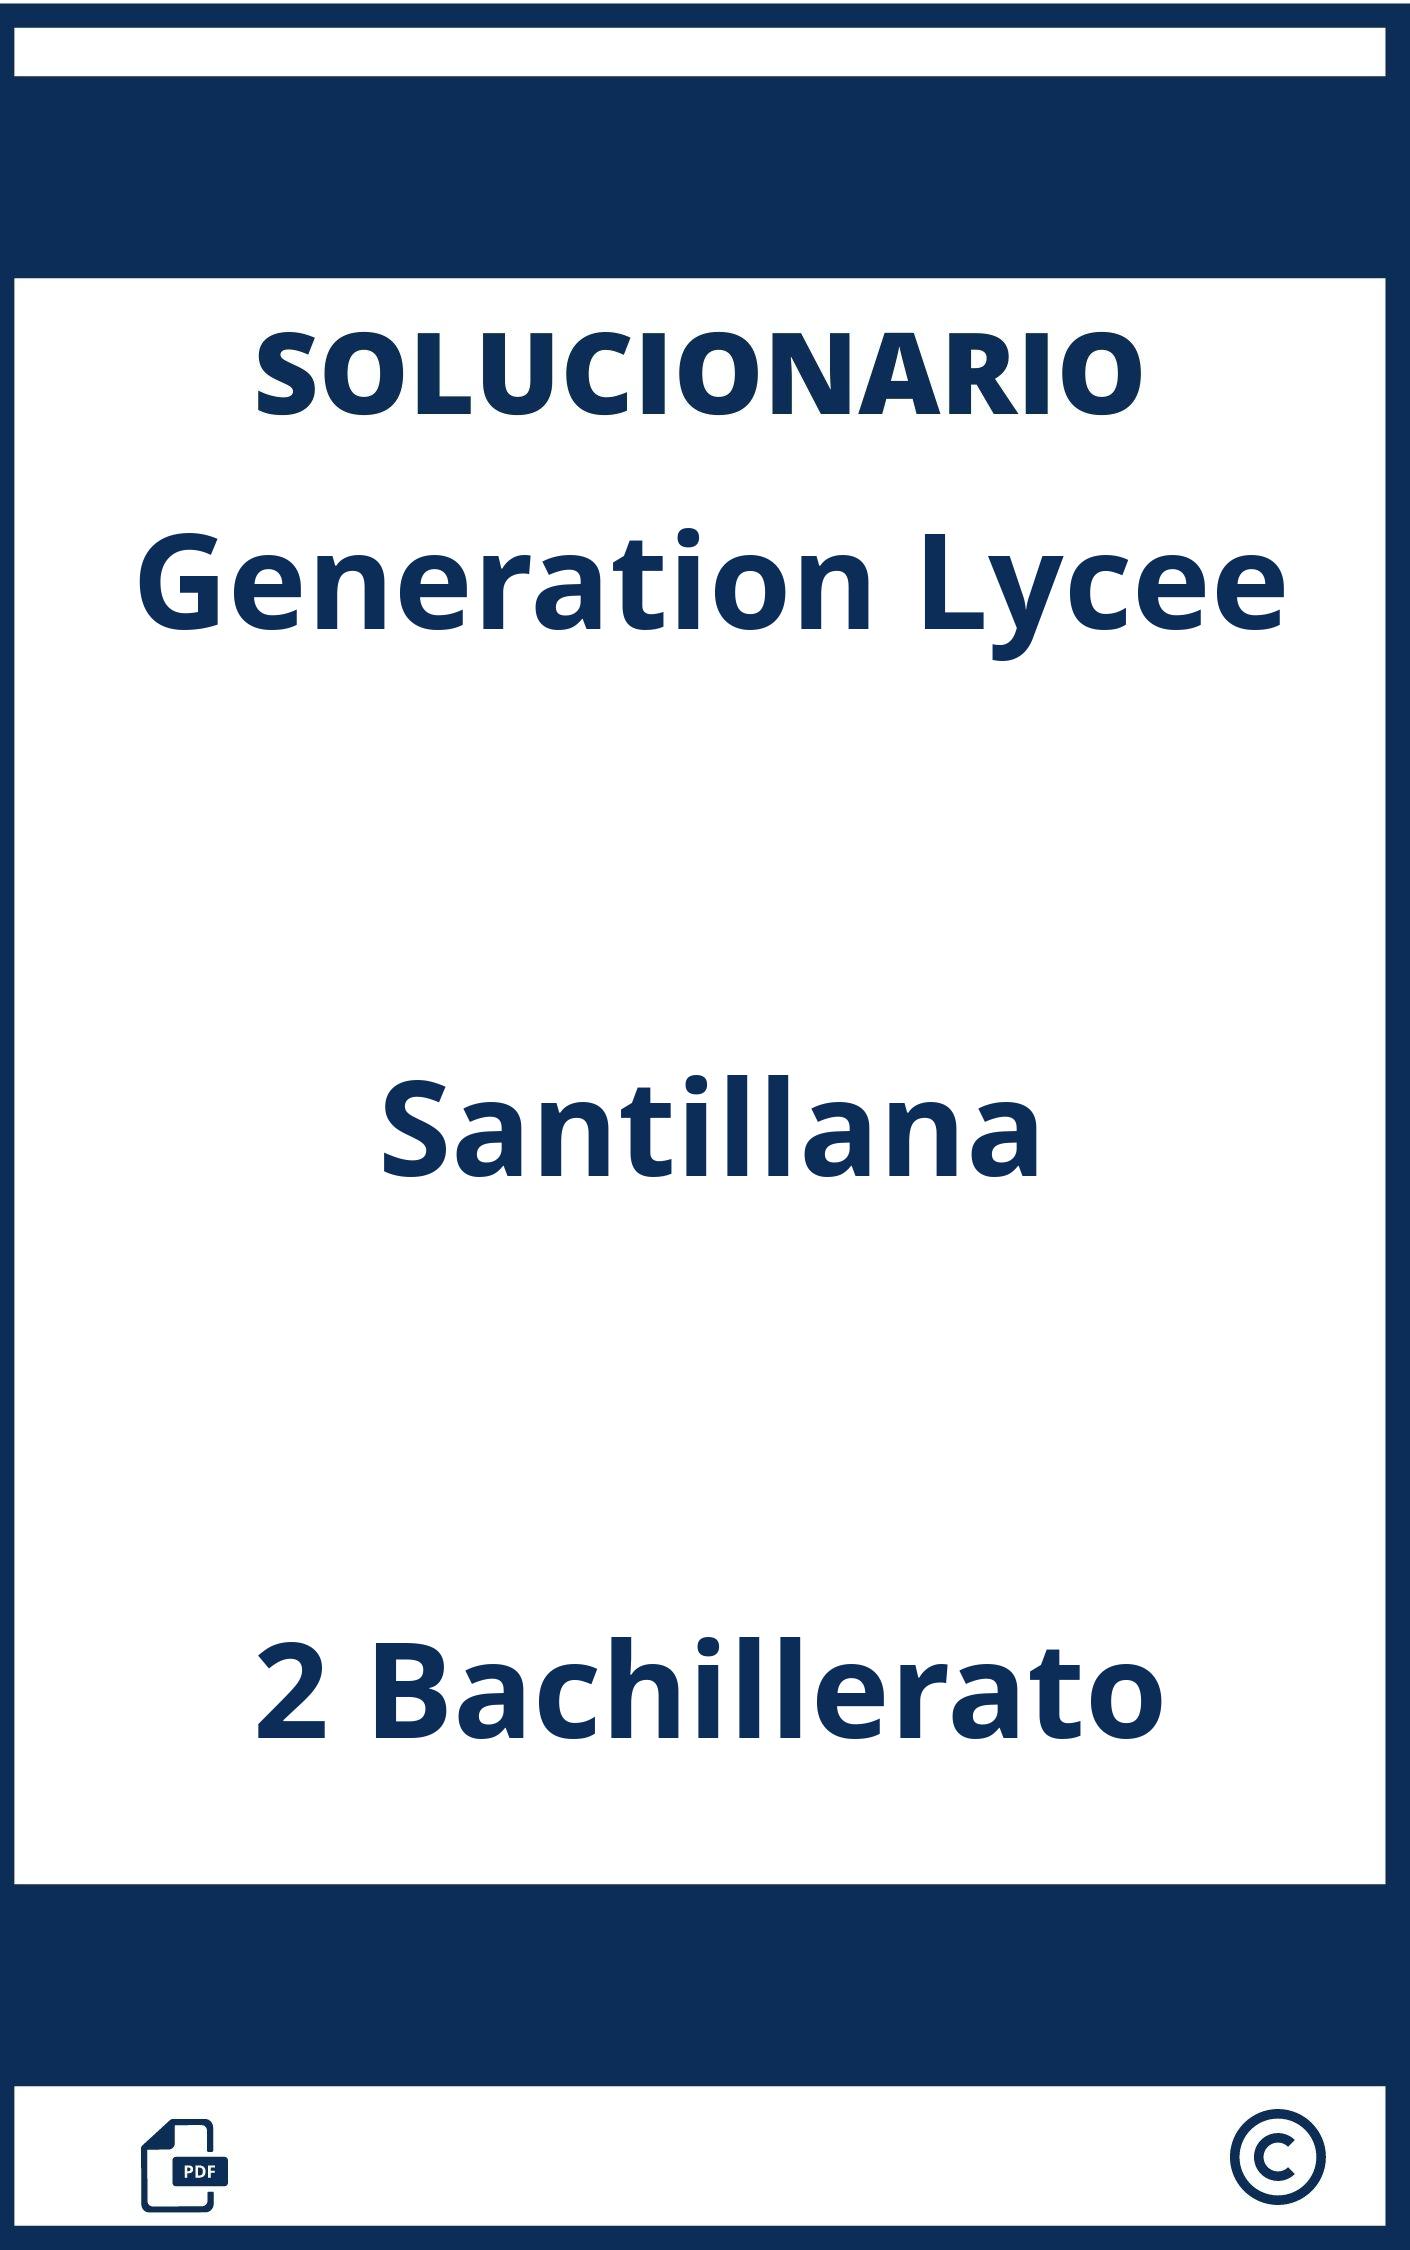 Generation Lycee 2 Santillana Solucionario